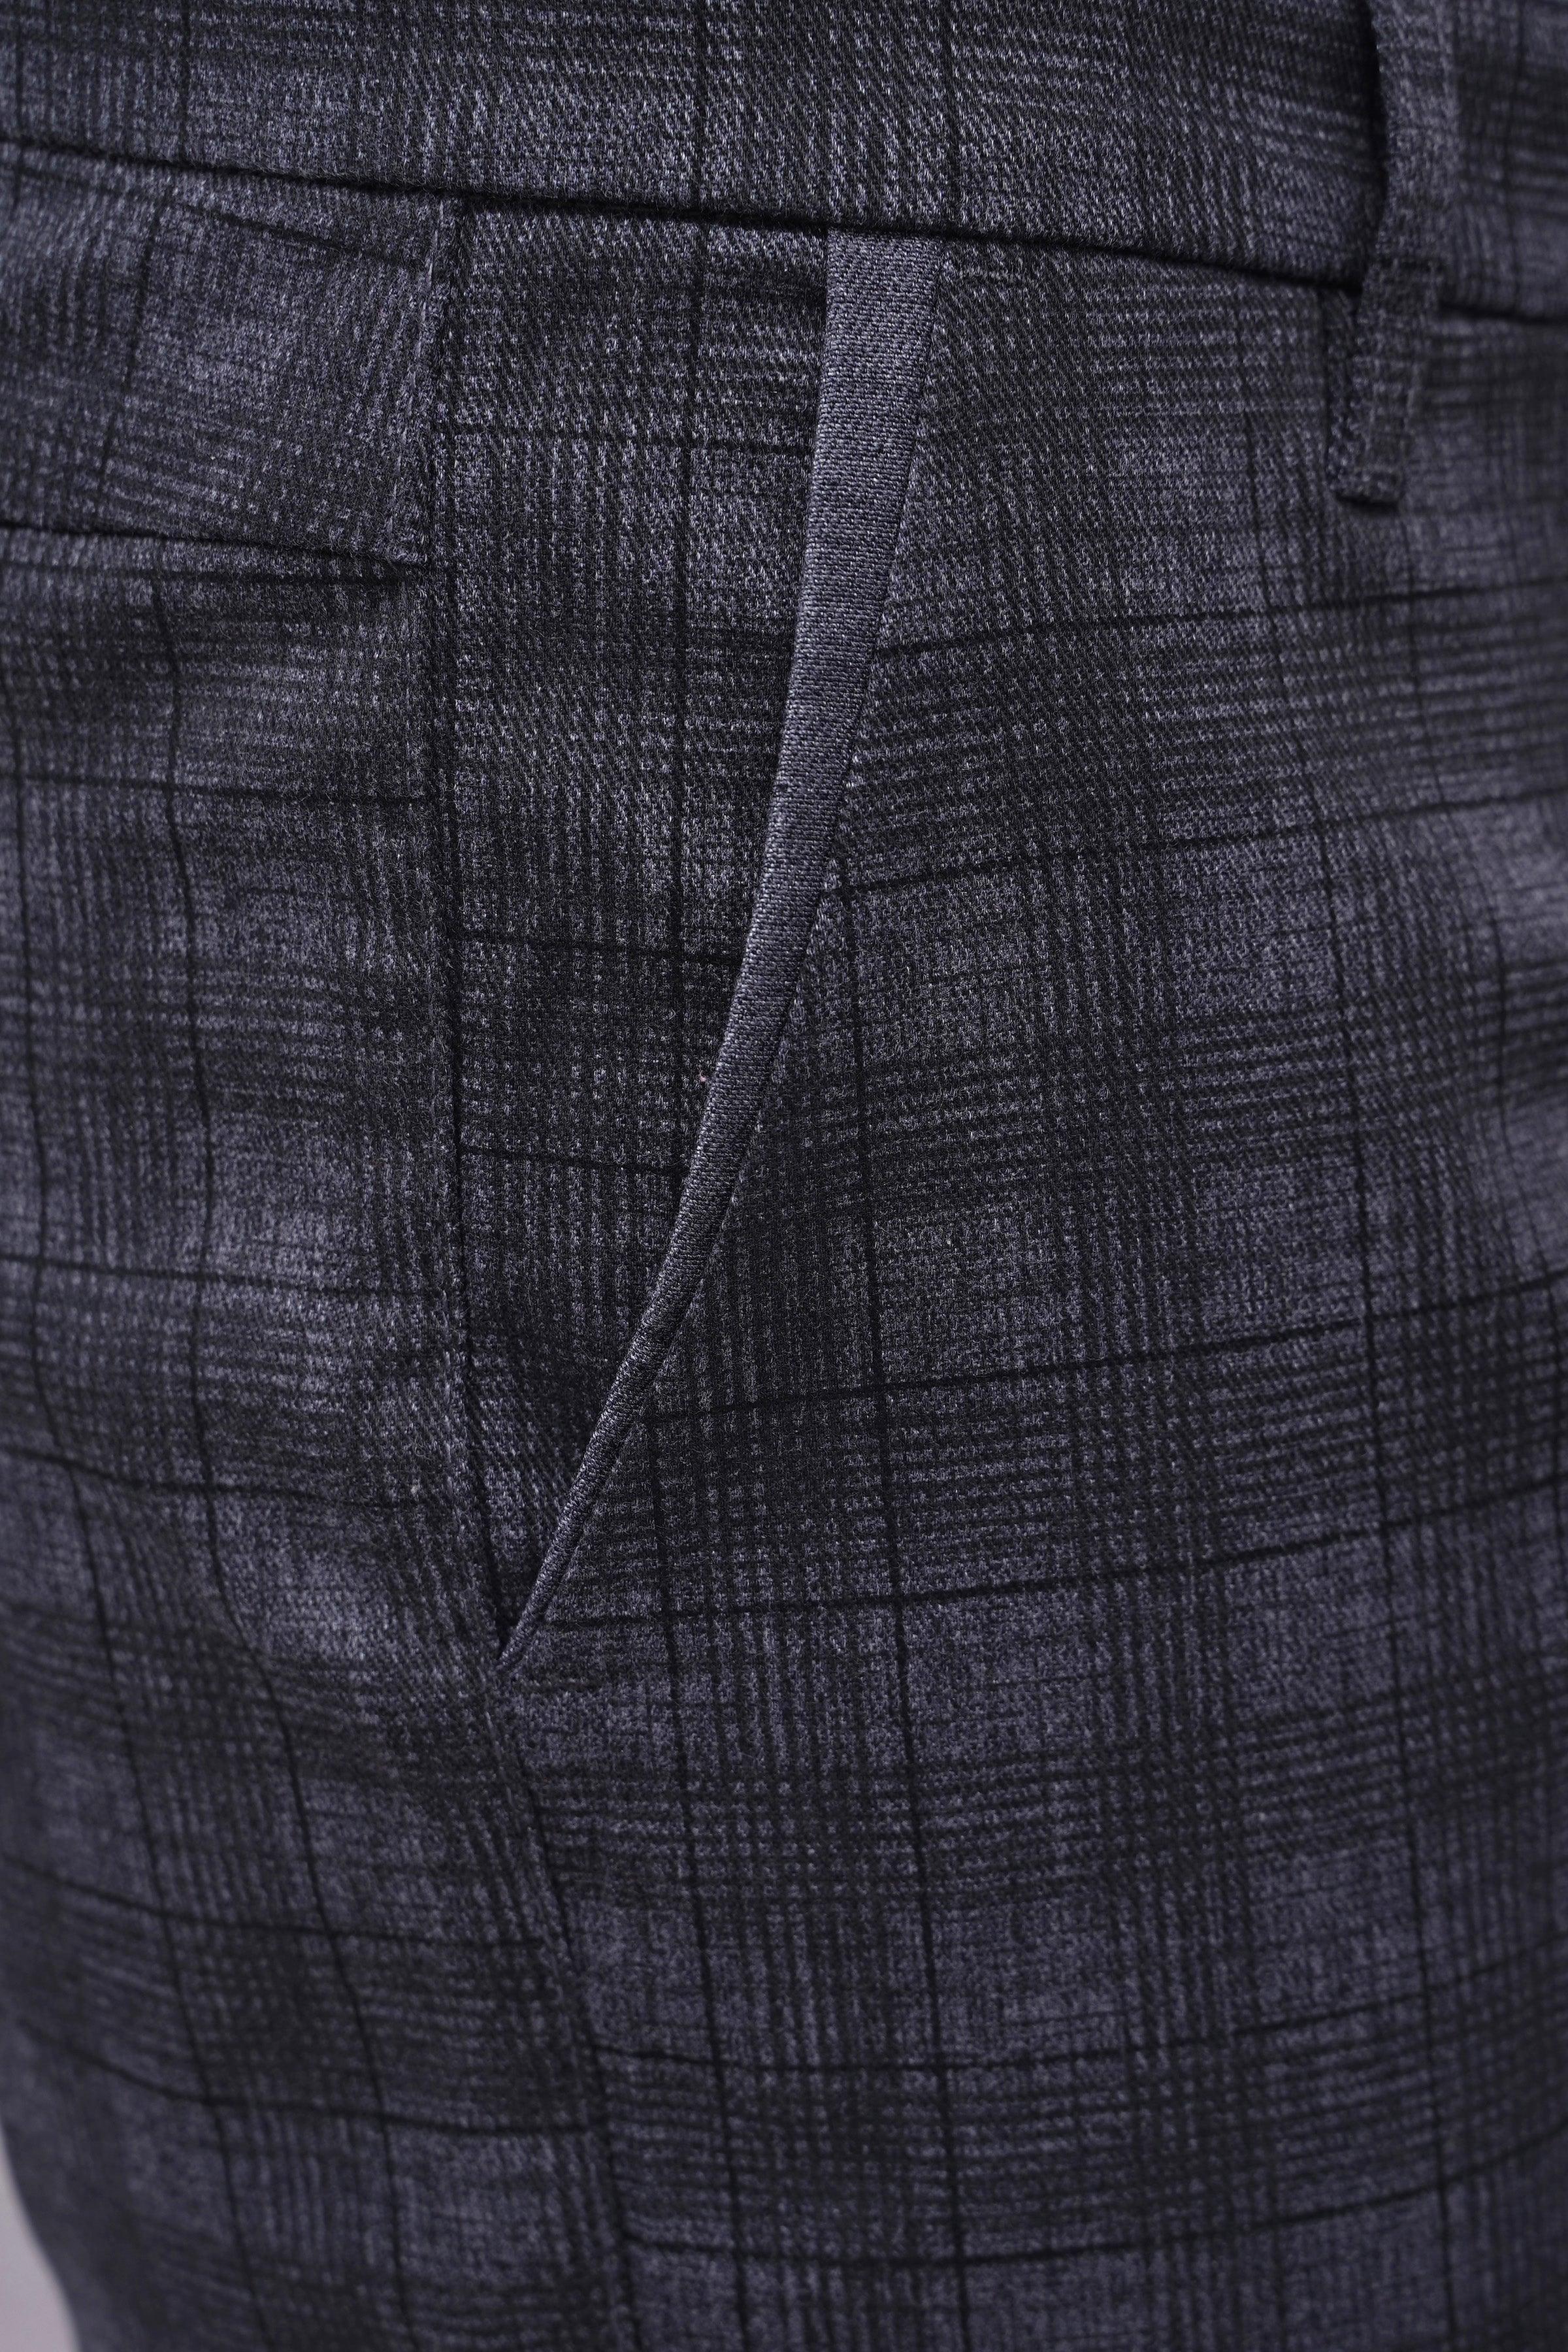 CROSS POCKET CASUAL PANT BLUE GREY CHECK at Charcoal Clothing